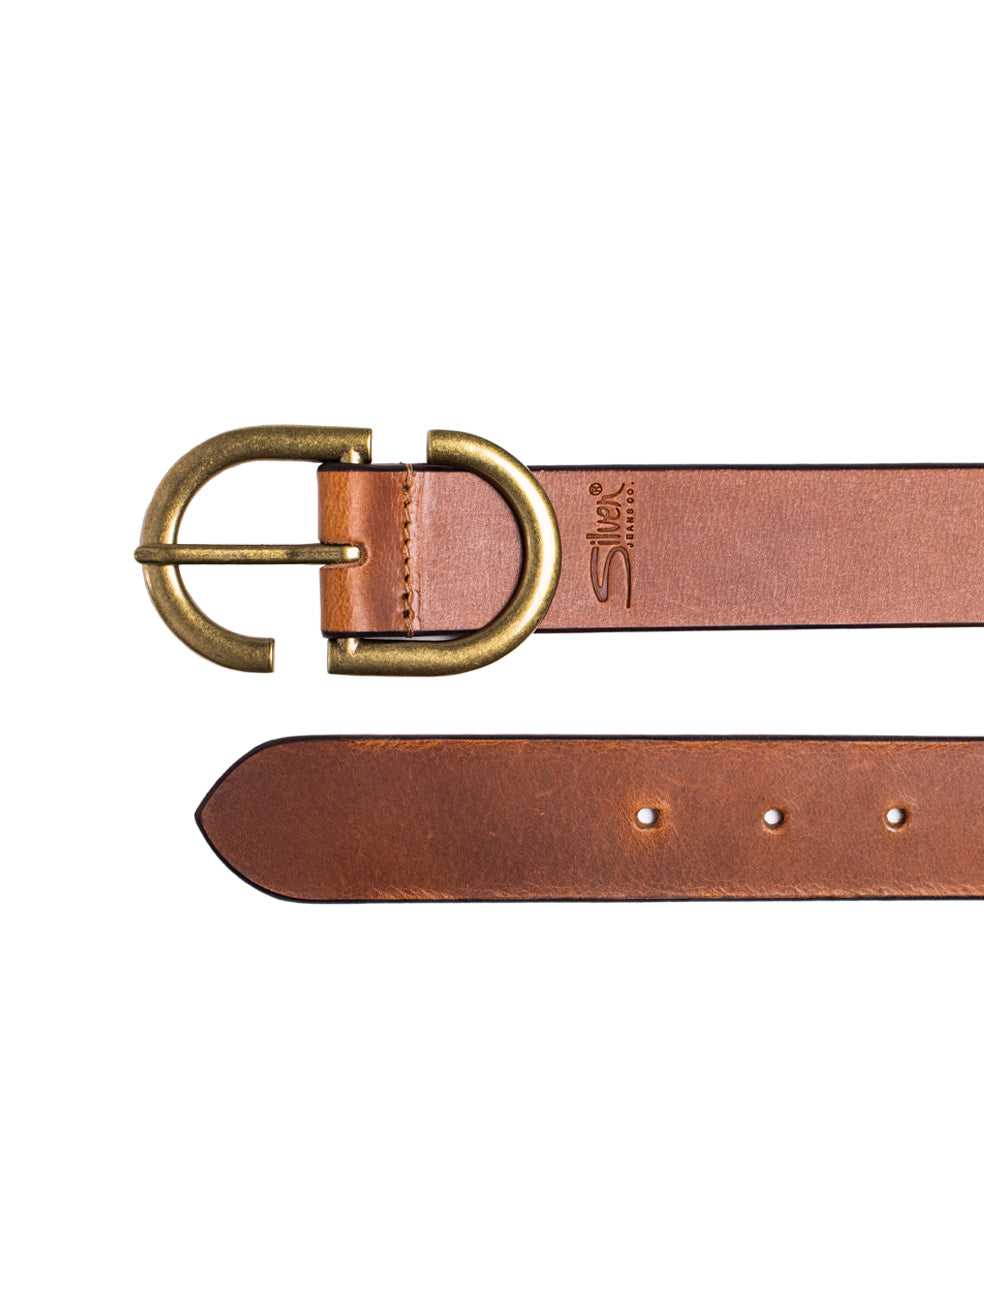 Sophie-45mm Full Grain Italian Leather Belt XL / Black